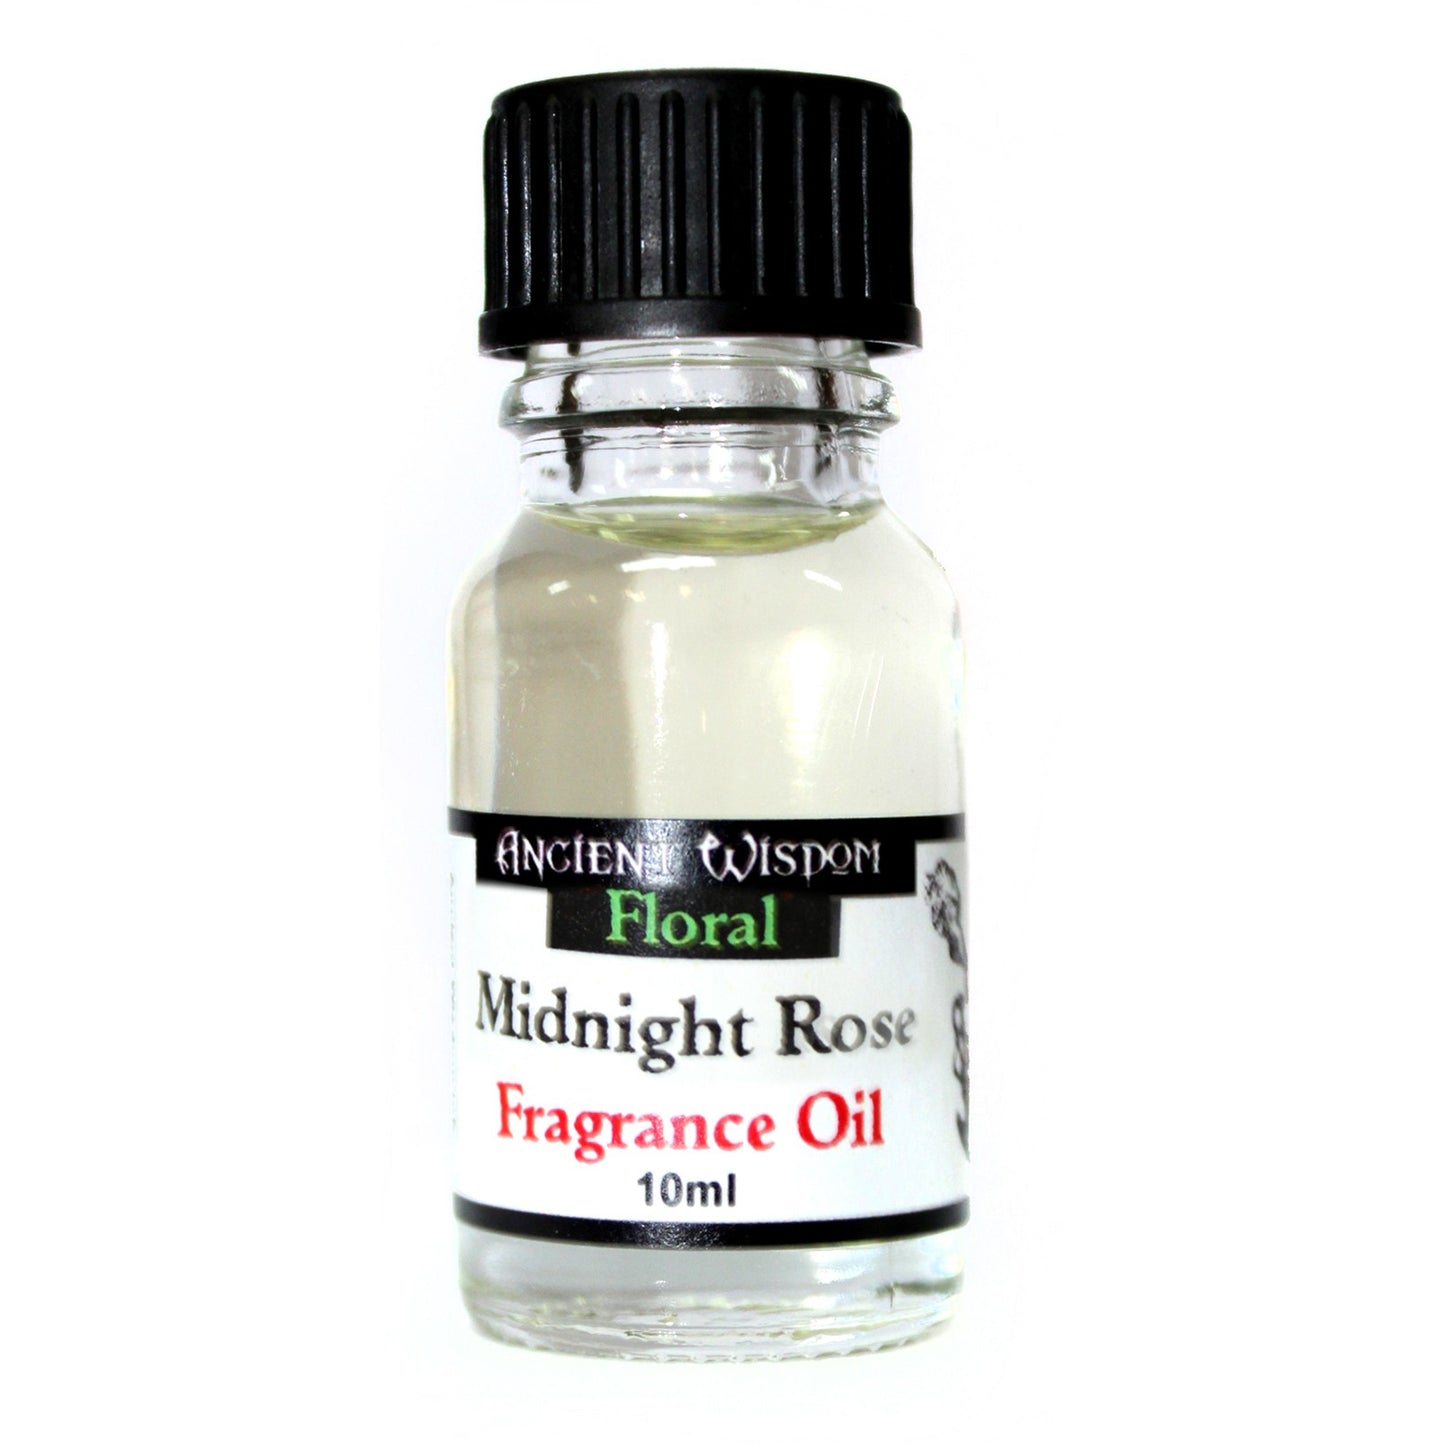 10ml Midnight Rose Fragrance Oil